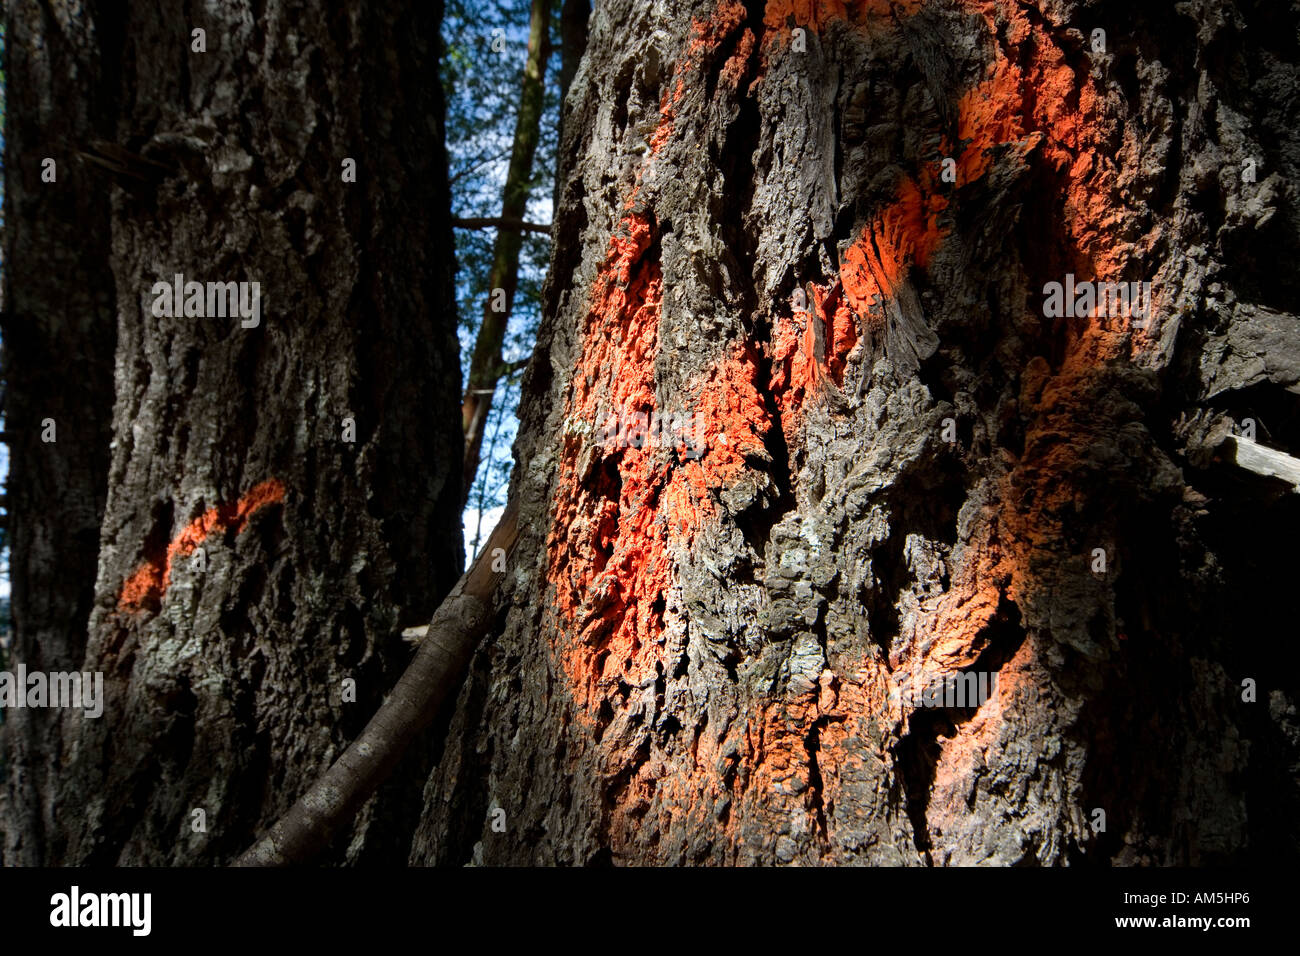 Die Protokollierung. Forstwirtschaft - Schilder an Baumstämme gemalt. Stockfoto